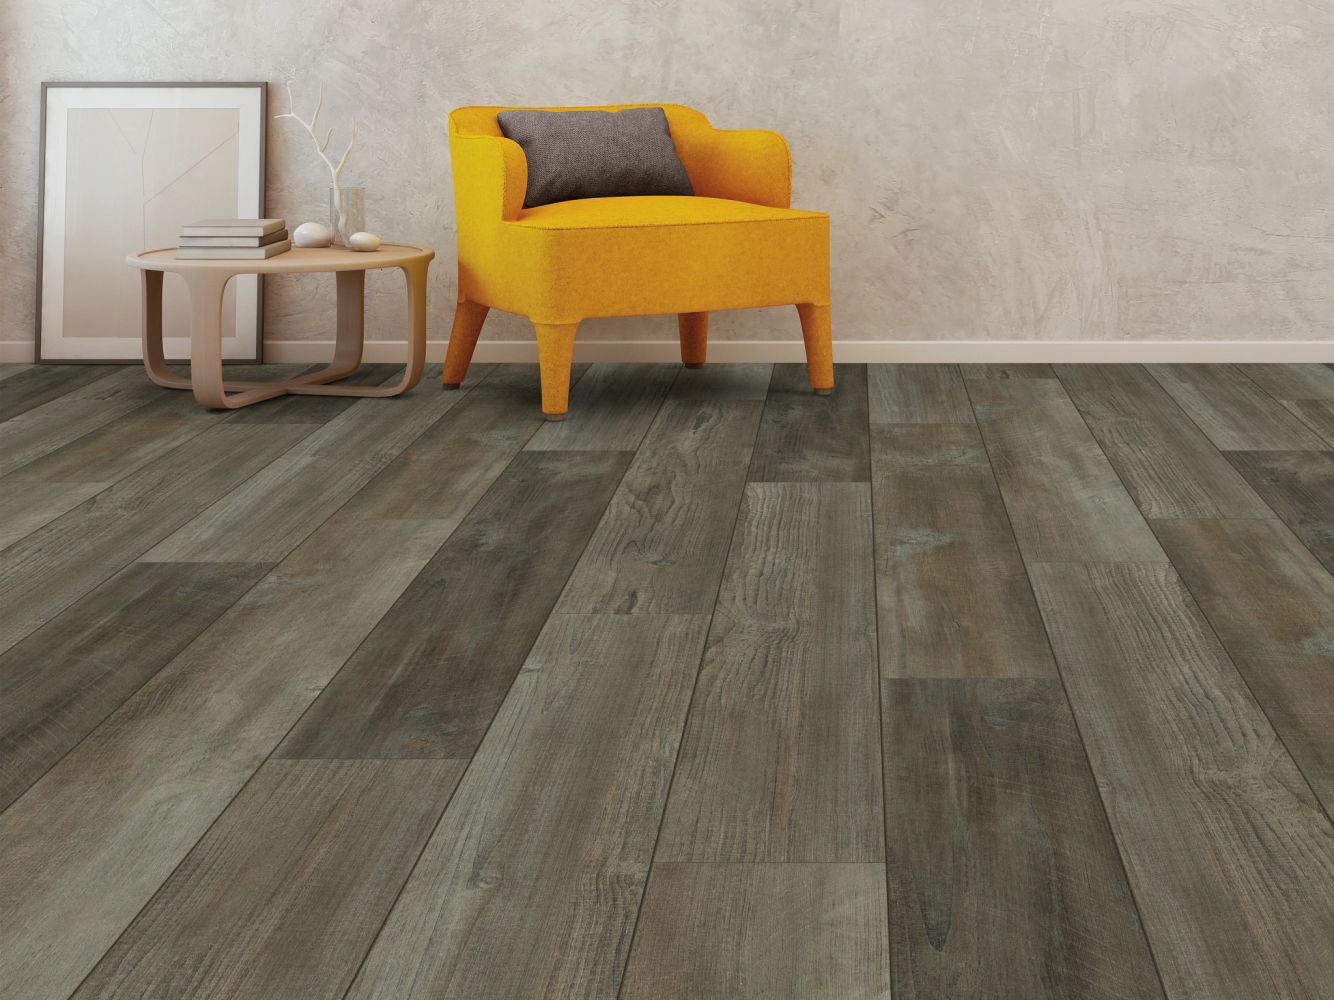 Shaw Floors Resilient Property Solutions Moonlit Pine 720c Plus Antique Pine 05006_514RG